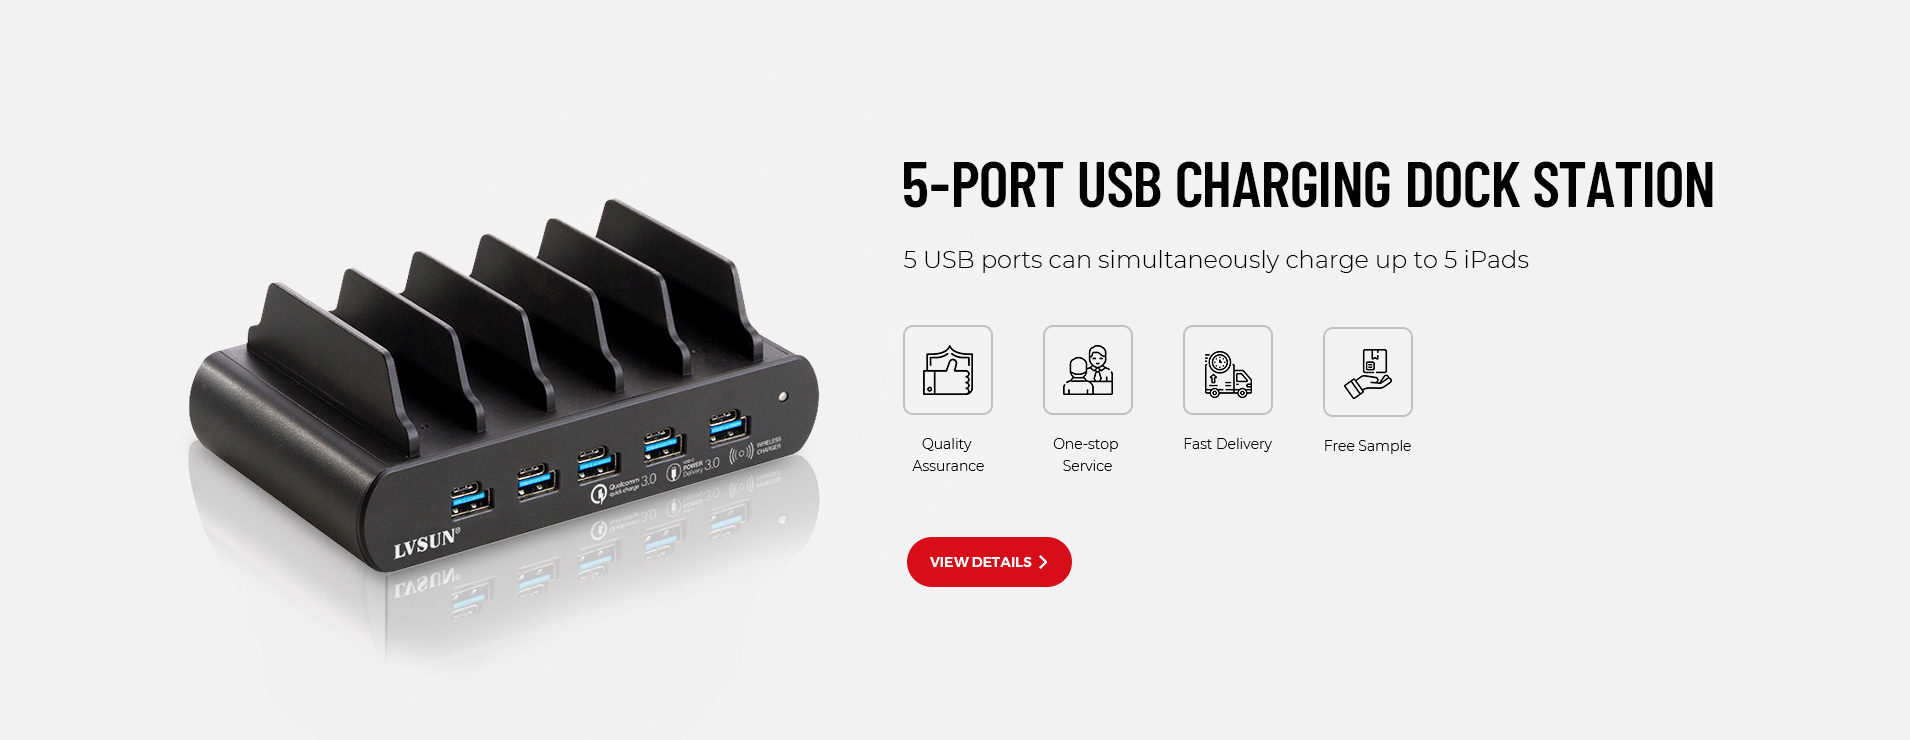 5-Port USB Charging Dock Station